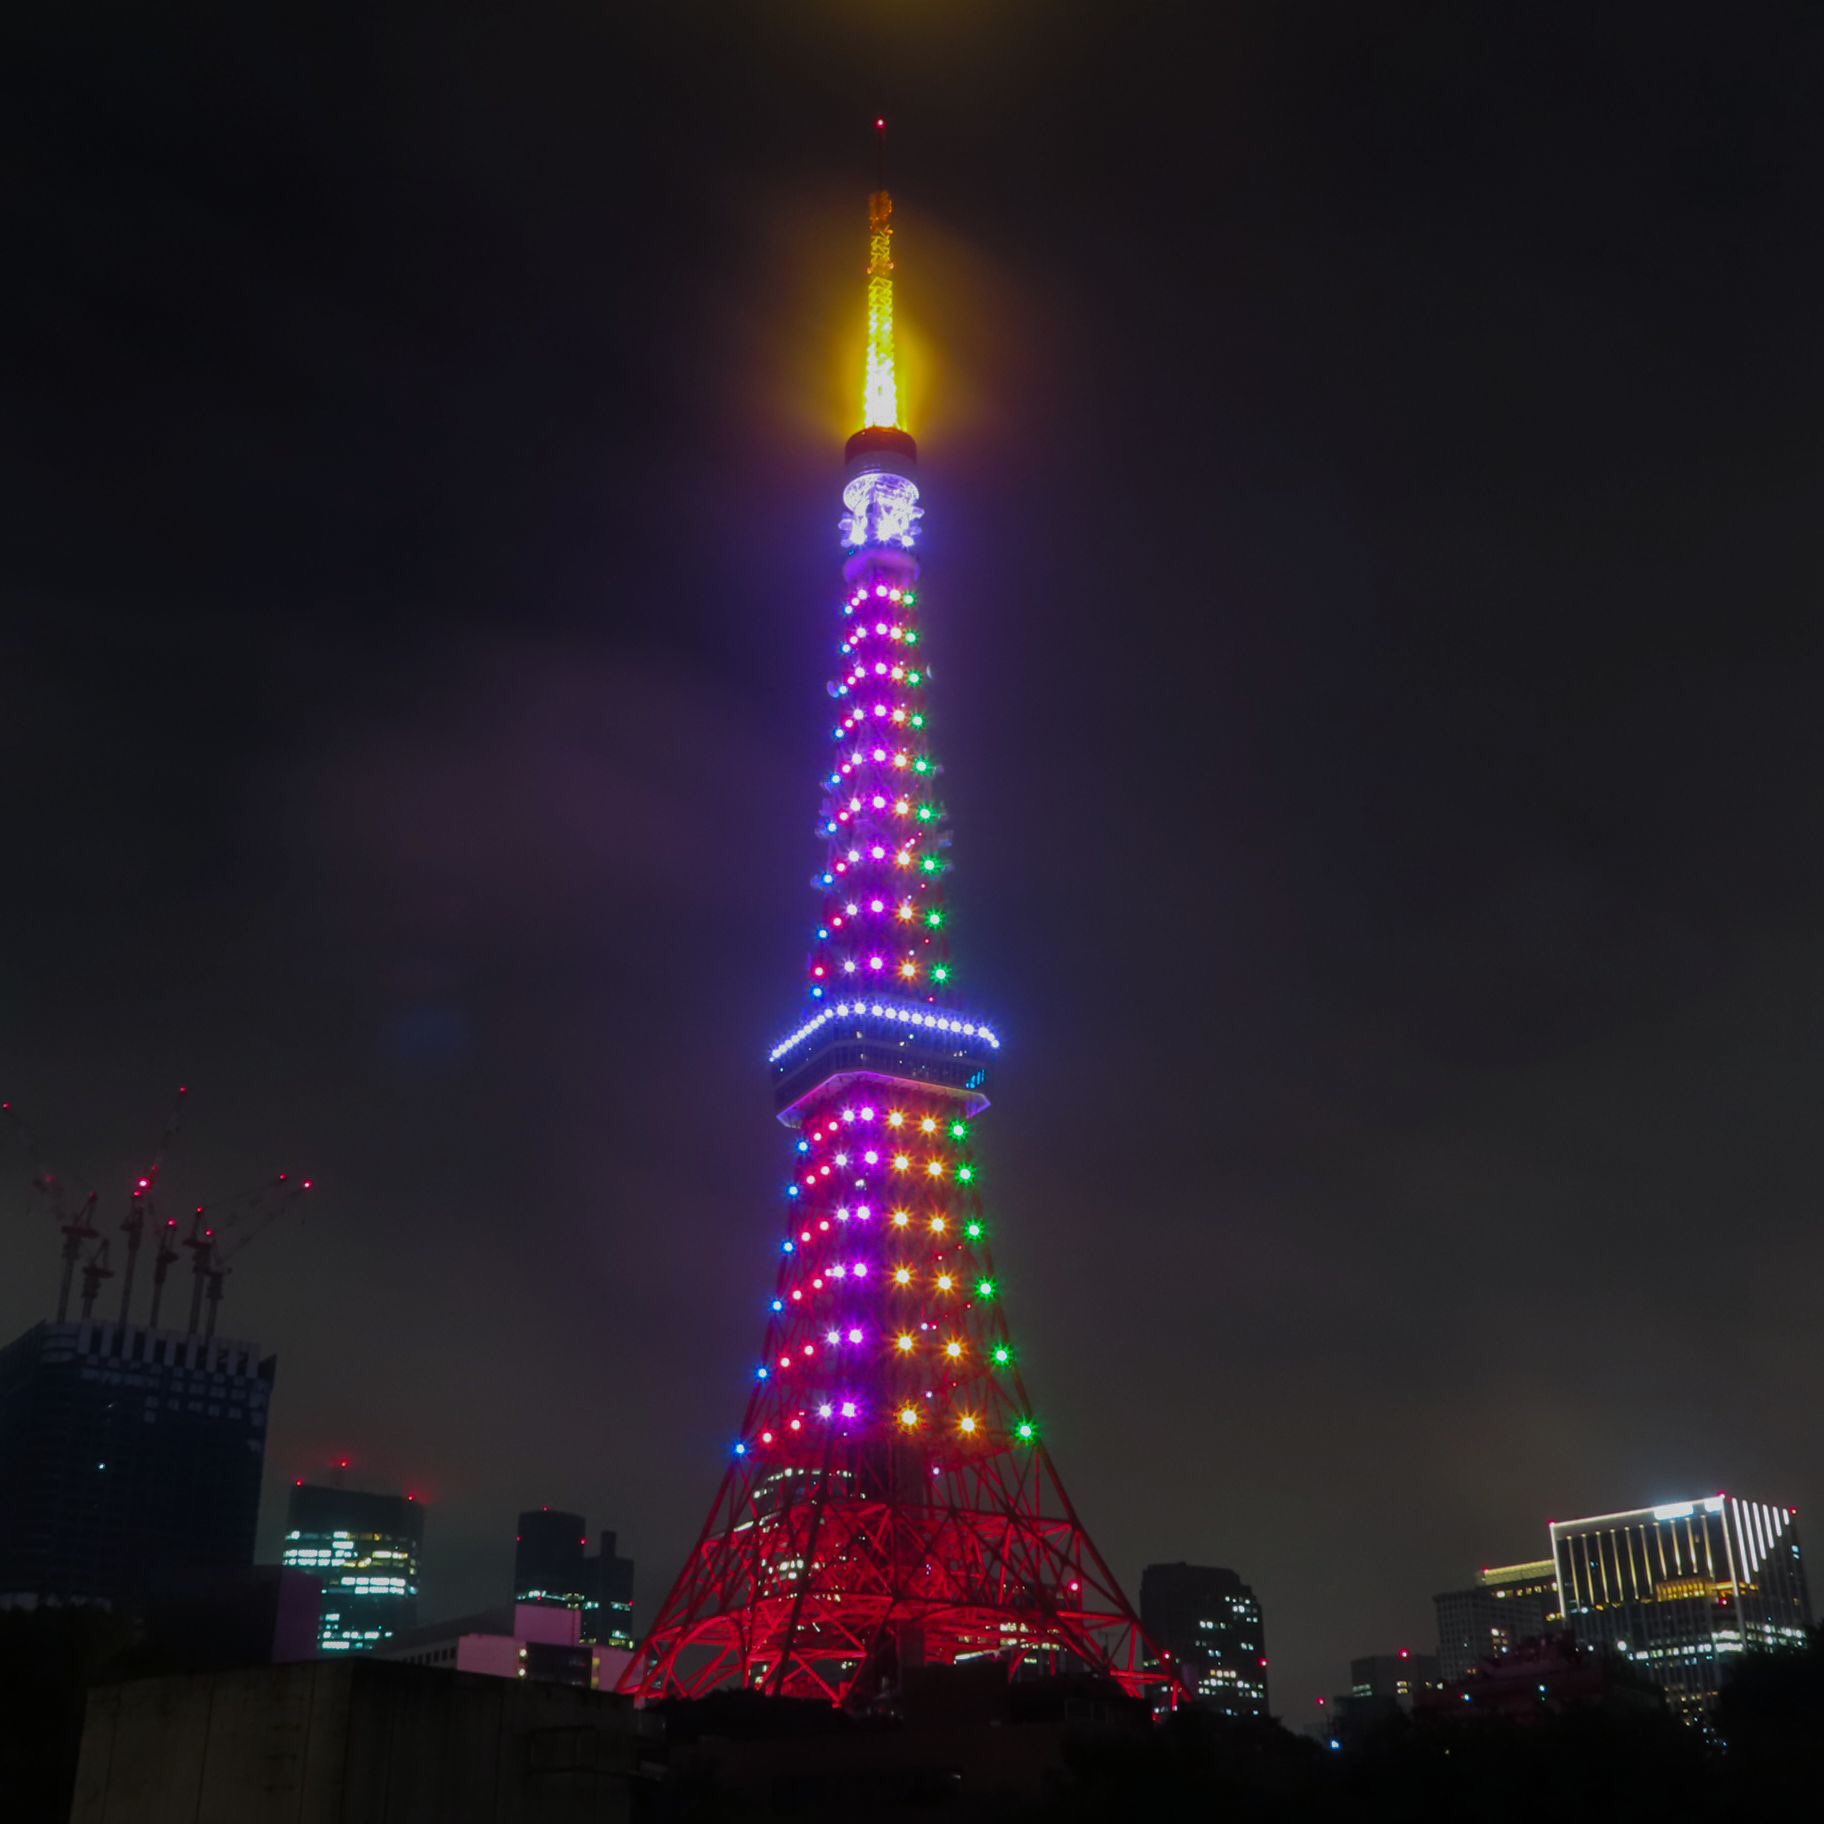 Towerup 今日の東京タワー 9月9日は古来より邪気を払い長寿を願う日ということで 重陽の節句スペシャルダイヤモンドヴェール が点灯しています コロナの終息を希う6色 青 赤 白 ピンク 黄 緑 のライトアップは本日30周年を迎えたsmapのメンバー